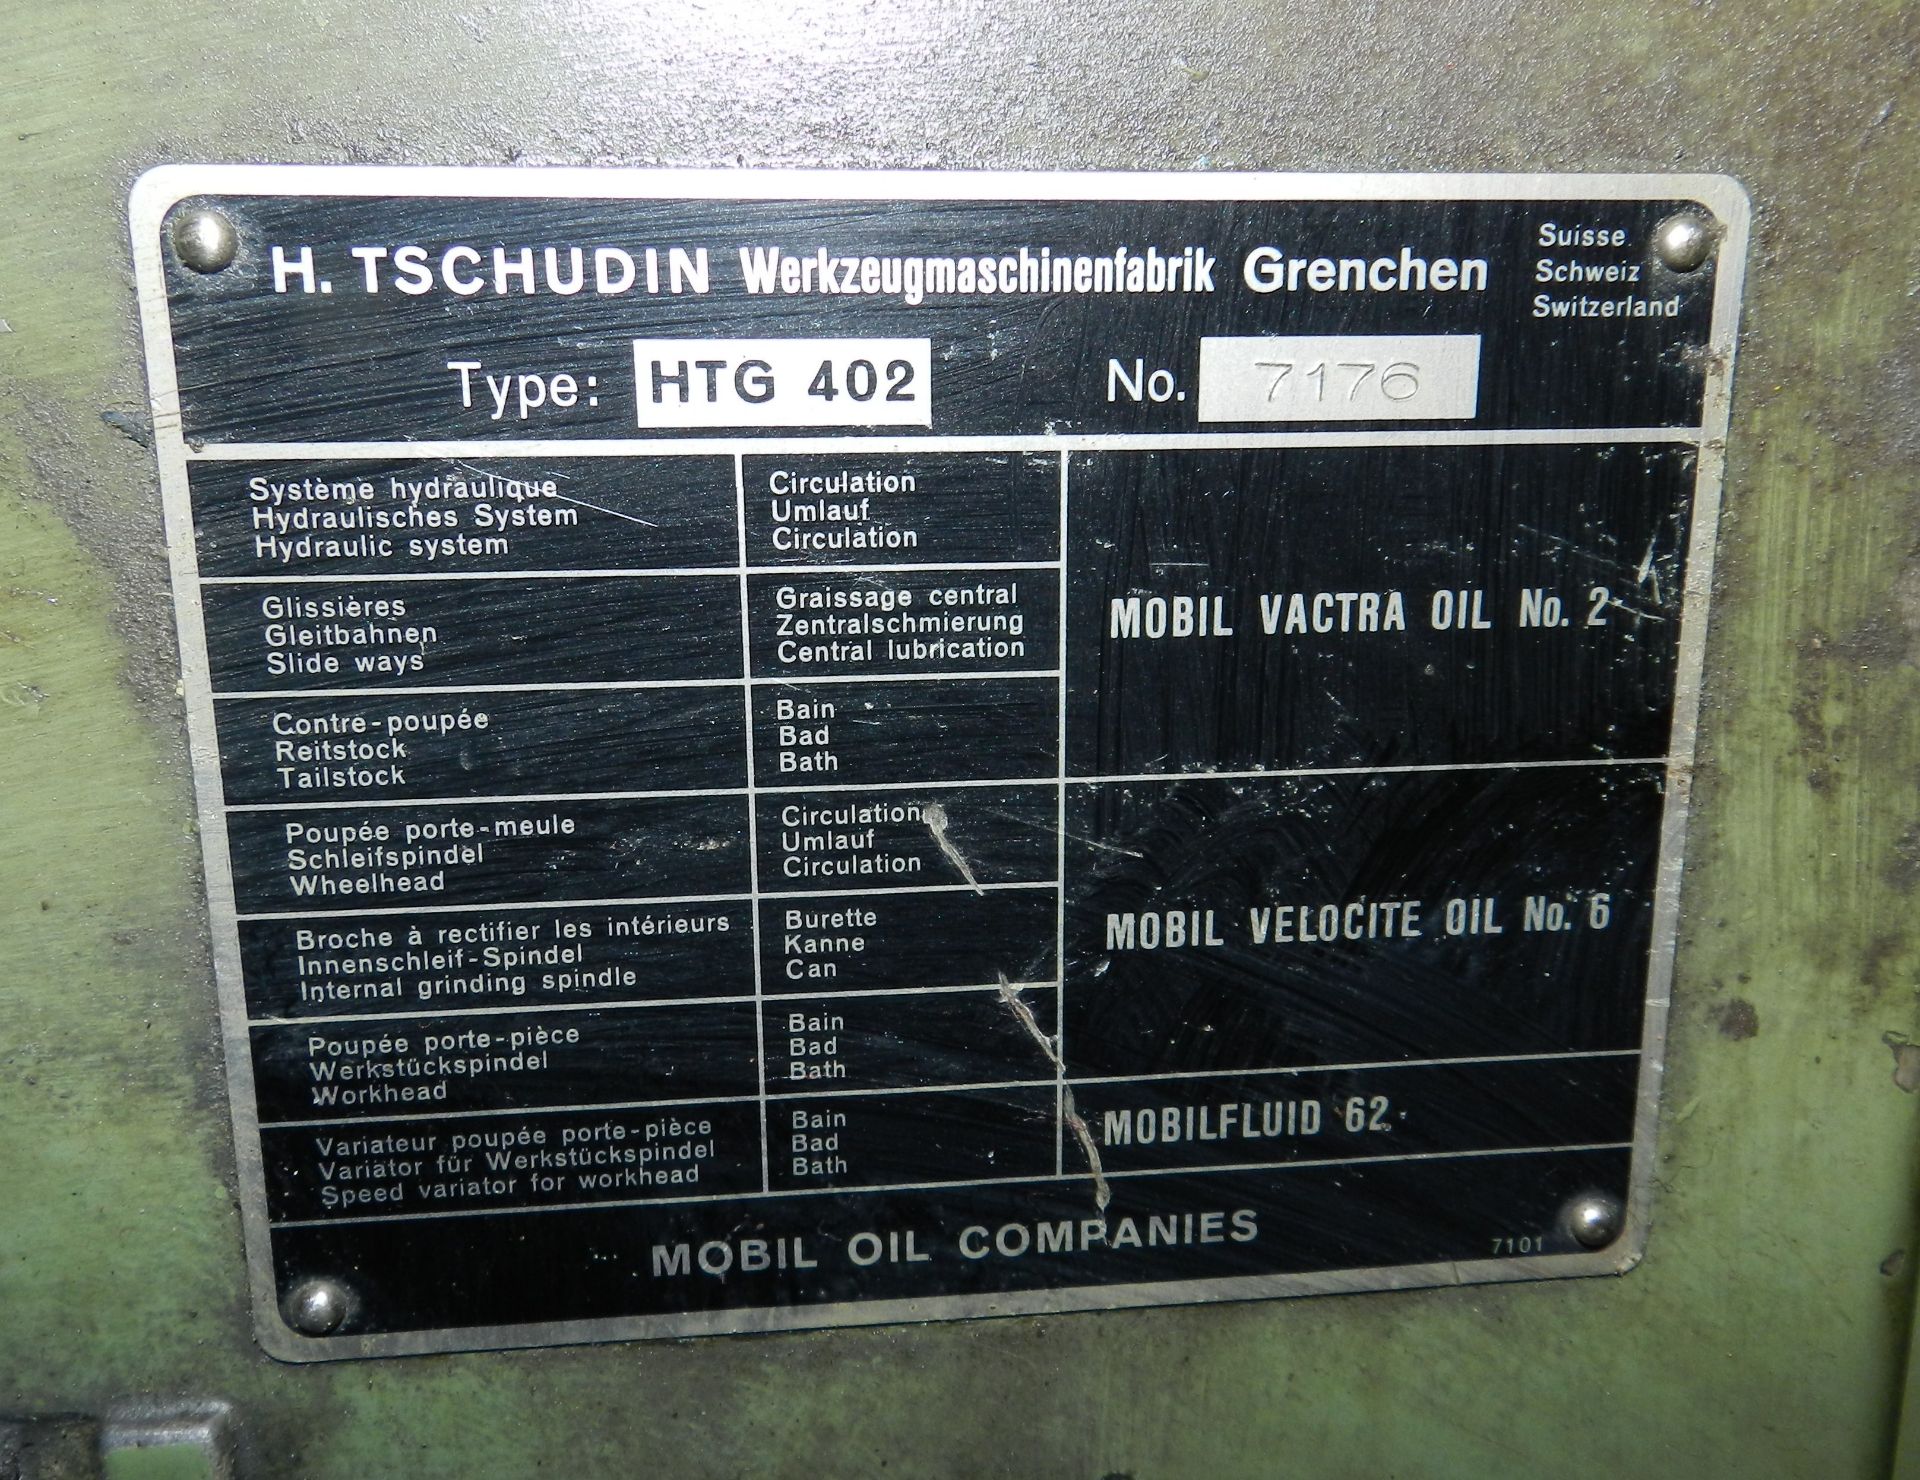 Tschudin HTG 402 Cylindrical Grinder - Image 4 of 11